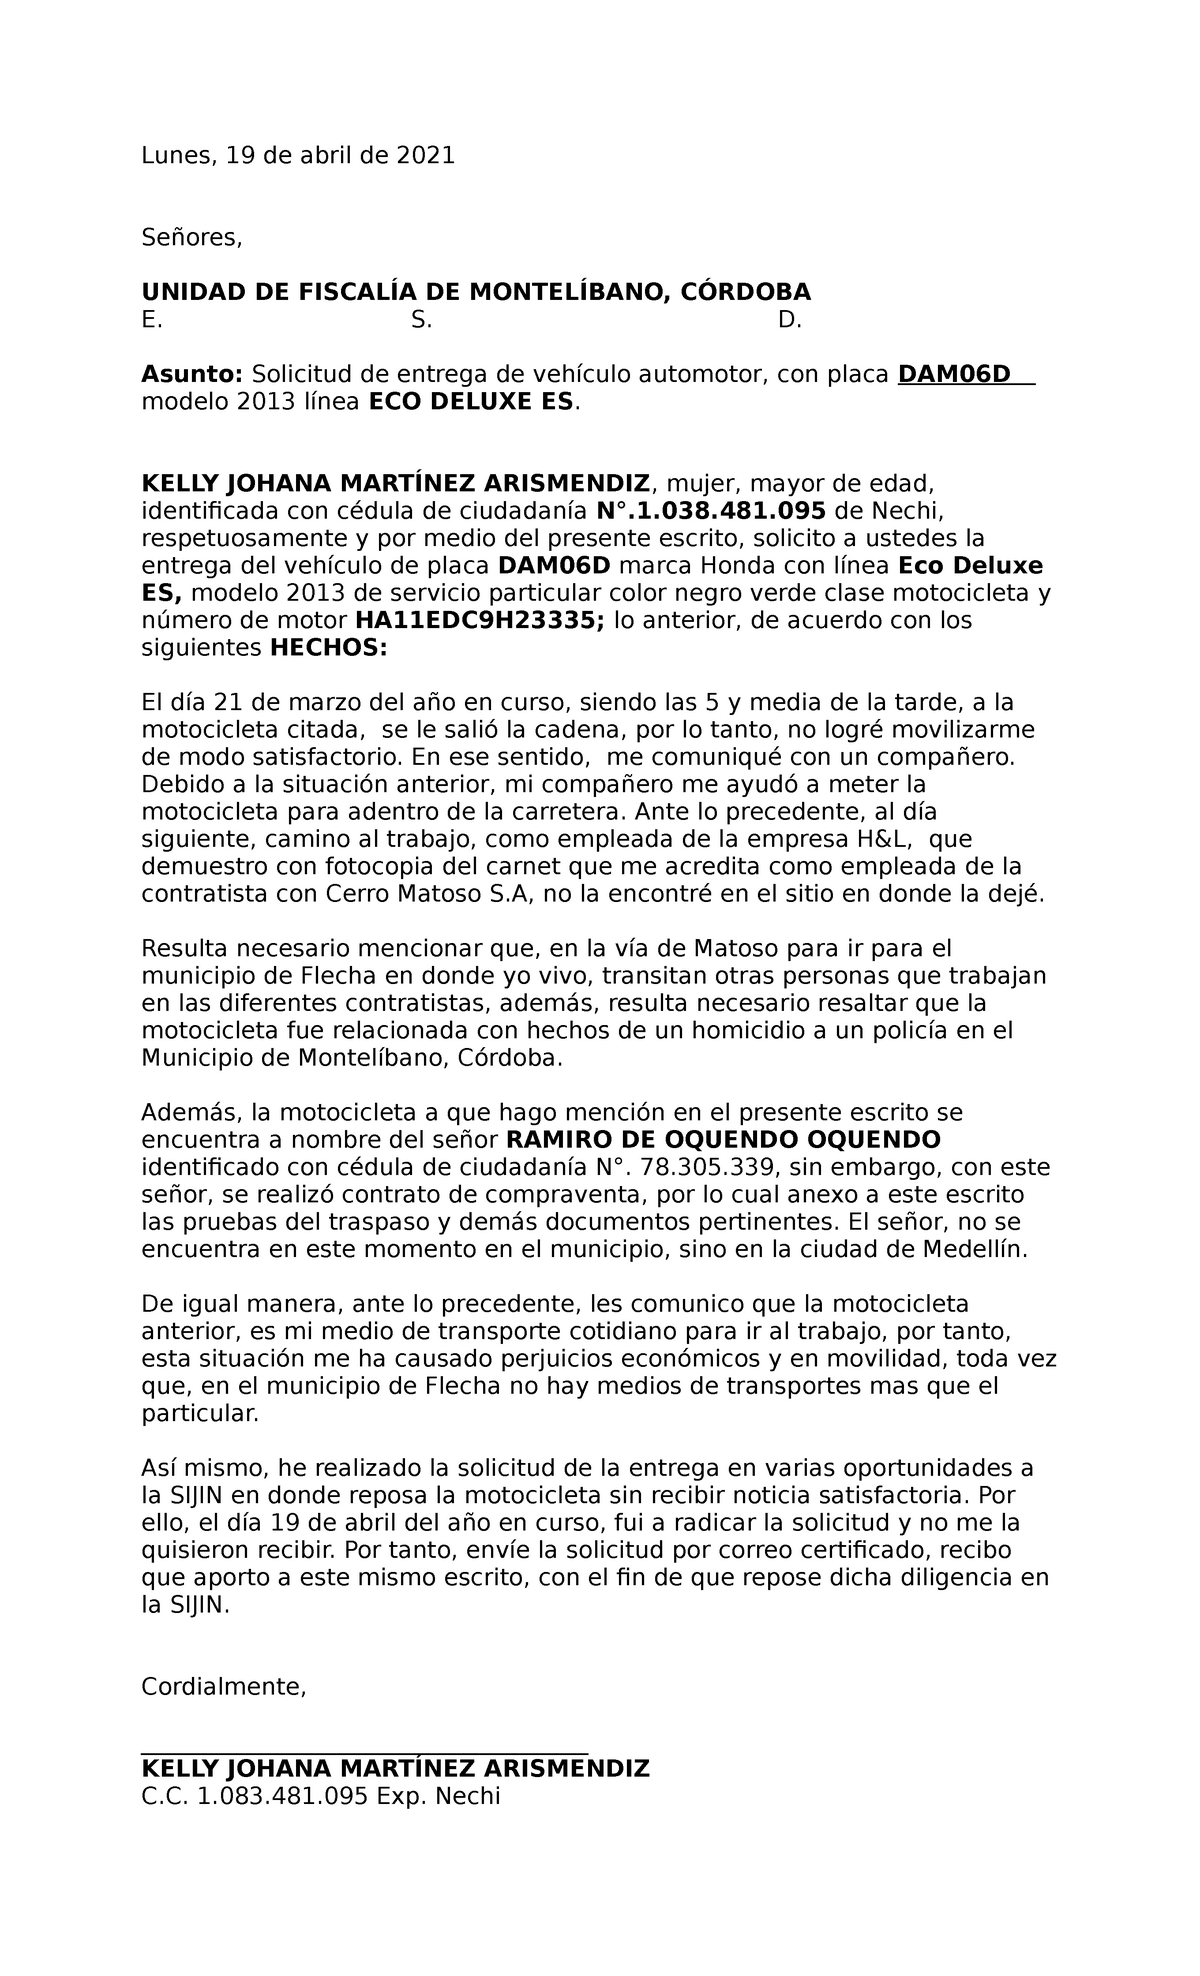 Fiscalía Solicitud Entrega definitiva de Vehículo - Lunes, 19 de abril de  2021 Señores, UNIDAD DE - Studocu